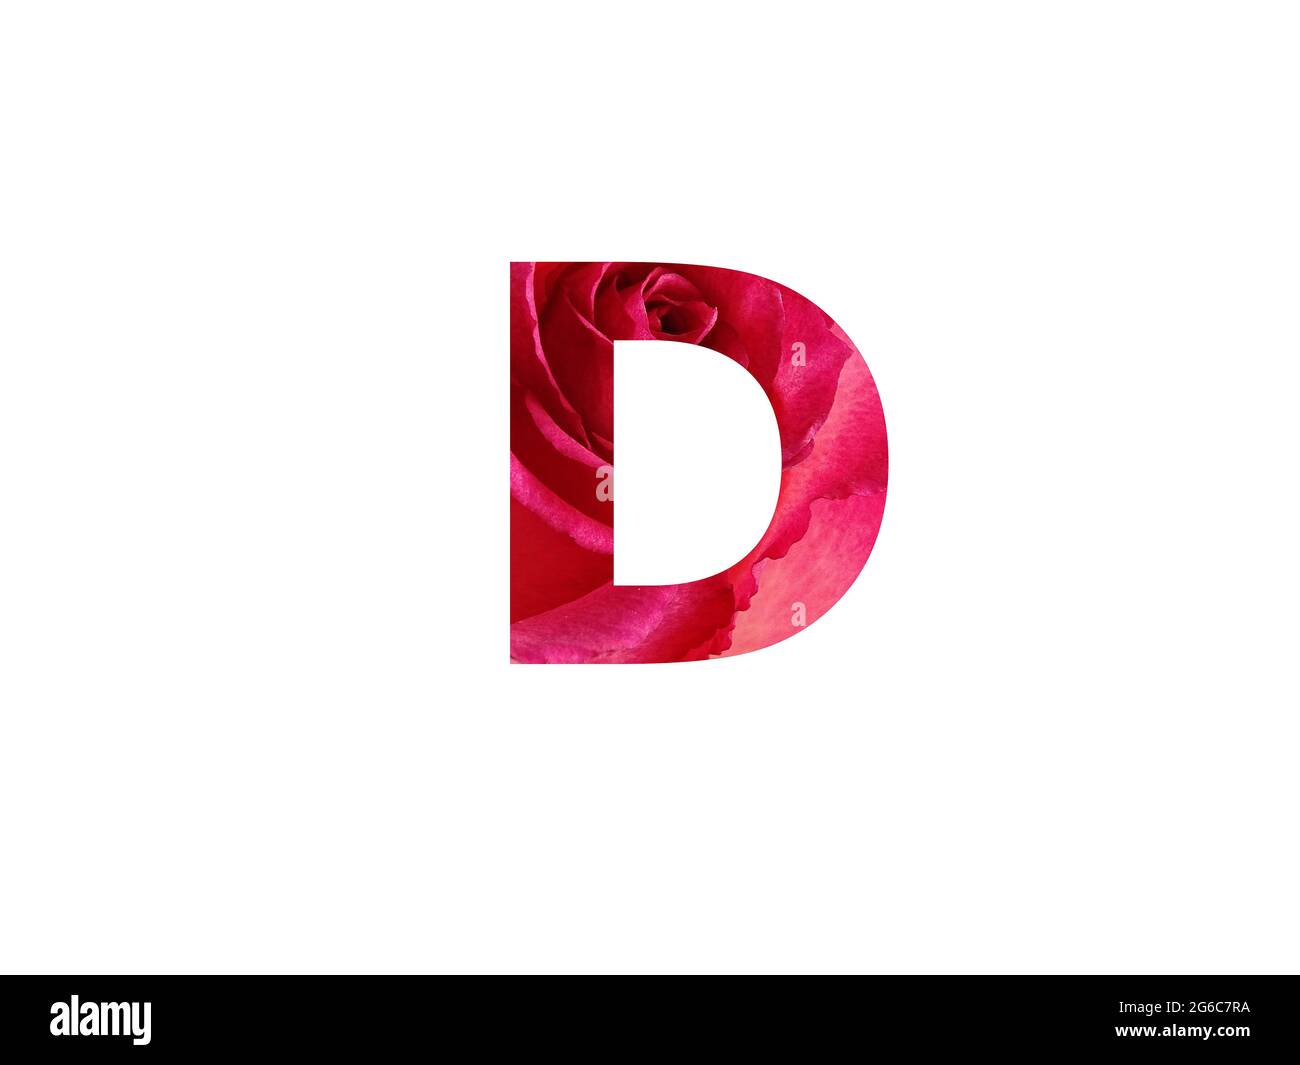 Letra D del alfabeto hecha con una foto de una rosa roja, aislada sobre un fondo blanco Foto de stock